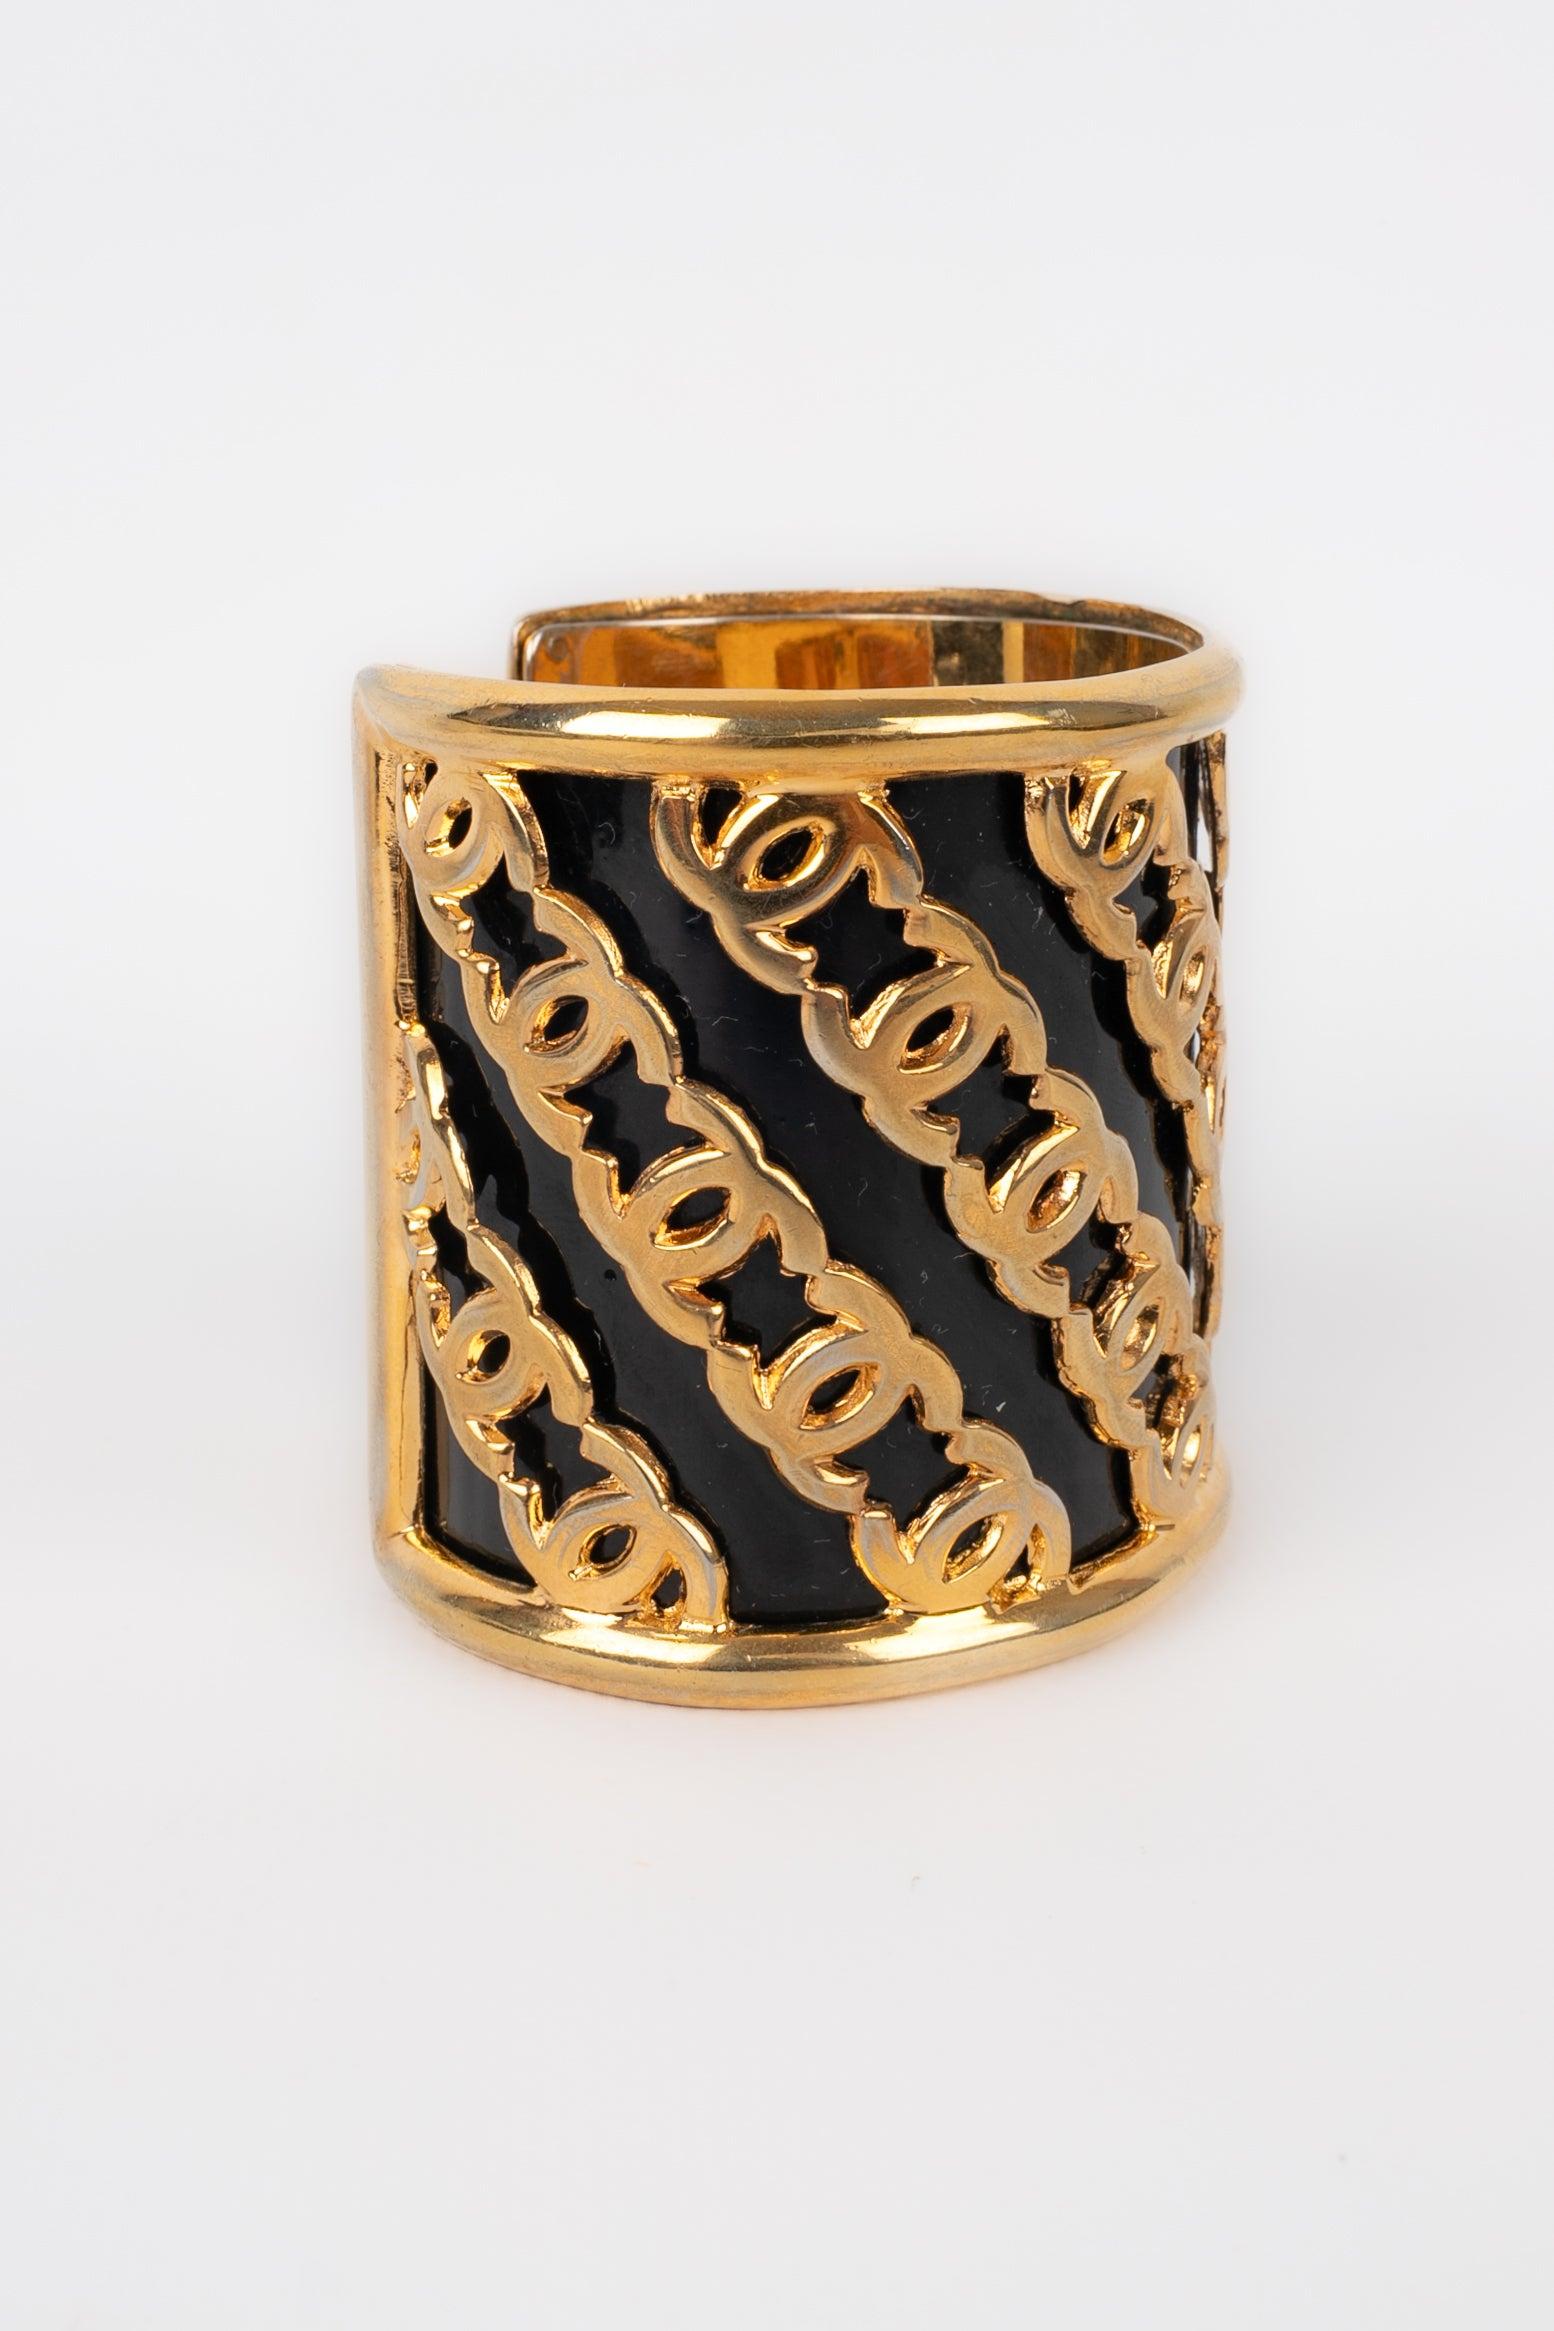 Chanel - Manschettenarmband aus goldenem Metall, schwarz emailliert.
 
 Zusätzliche Informationen: 
 Zustand: Sehr guter Zustand
 Abmessungen: Umfang des Handgelenks: 14 cm - Höhe: 6 cm
 
 Sellers Referenz: BRAB44